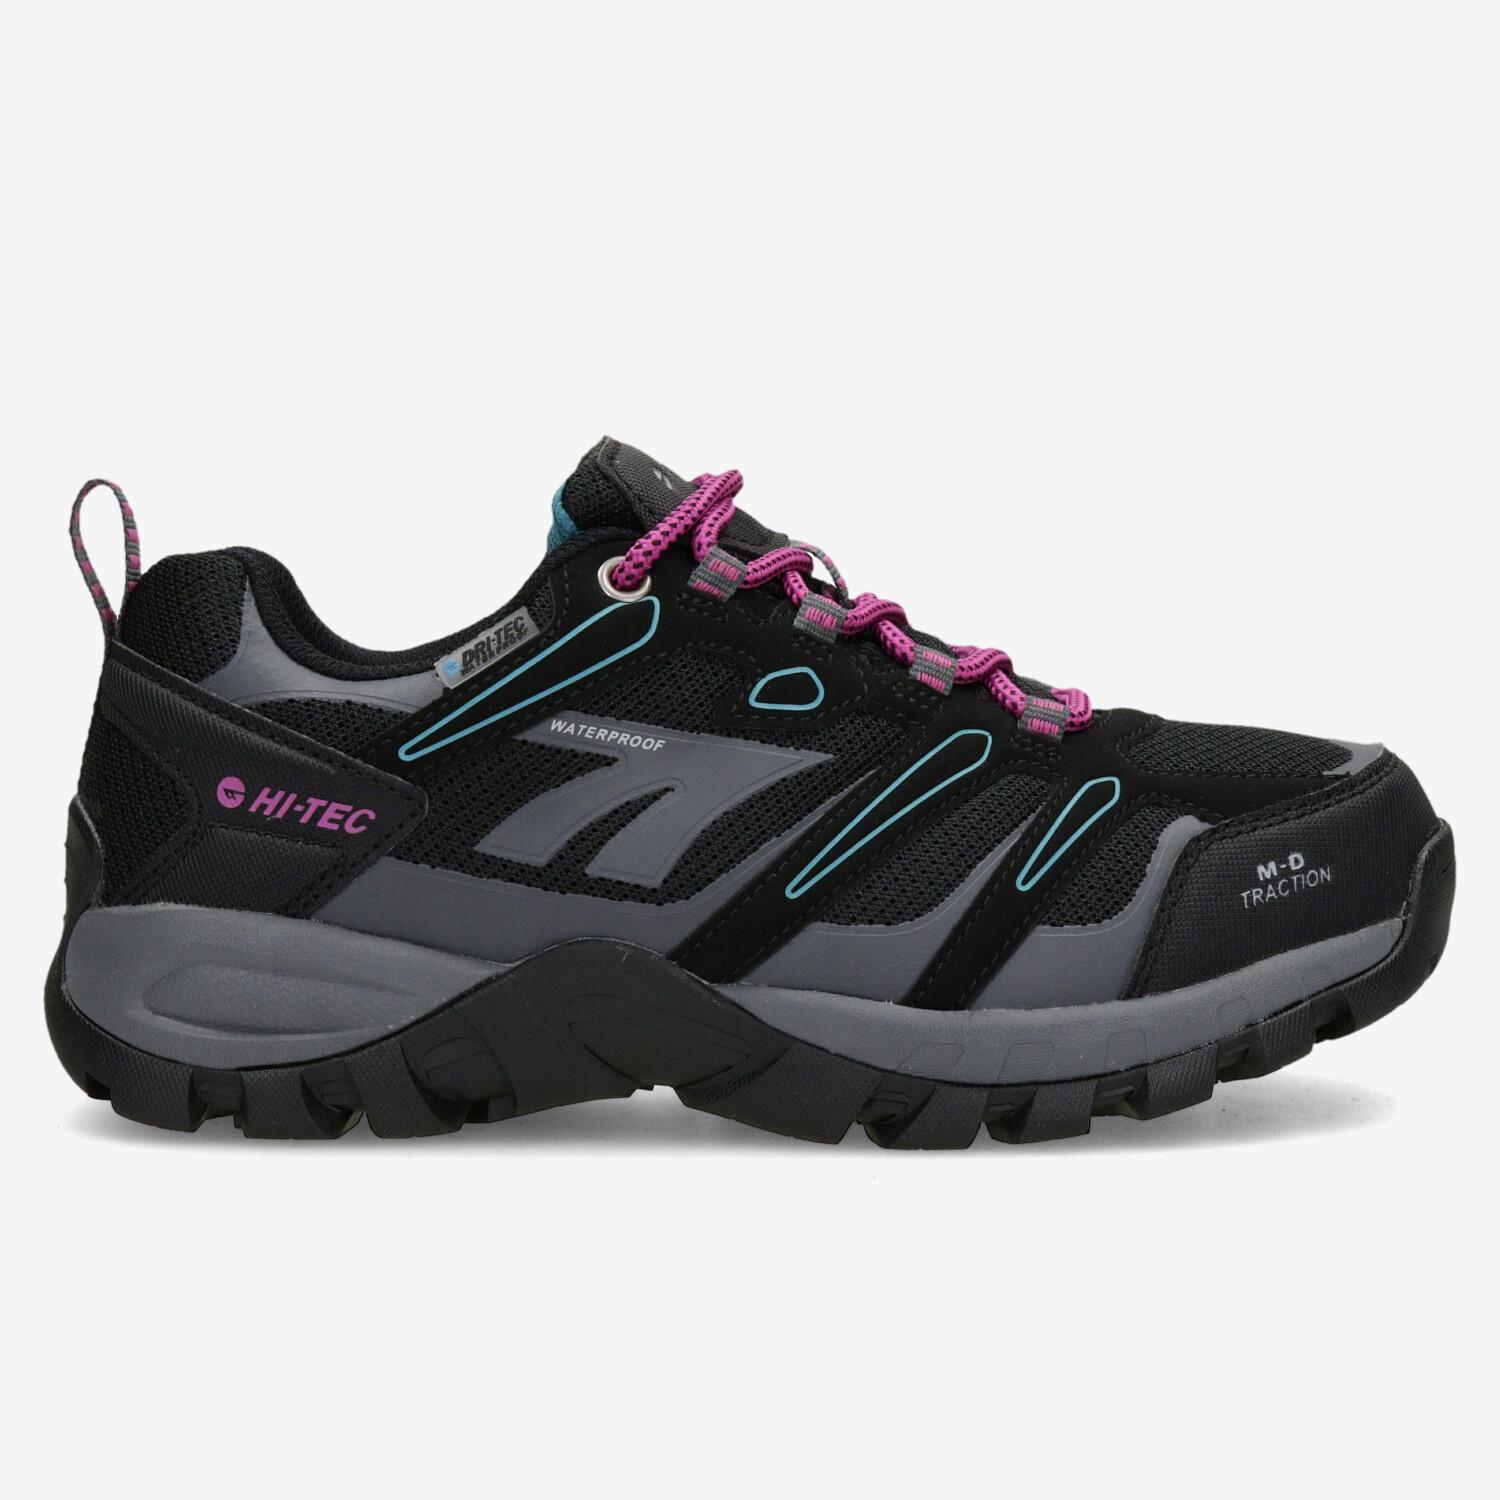 Hi- Tec Muflon - Noir - Chaussures de randonnée femme sports taille 36